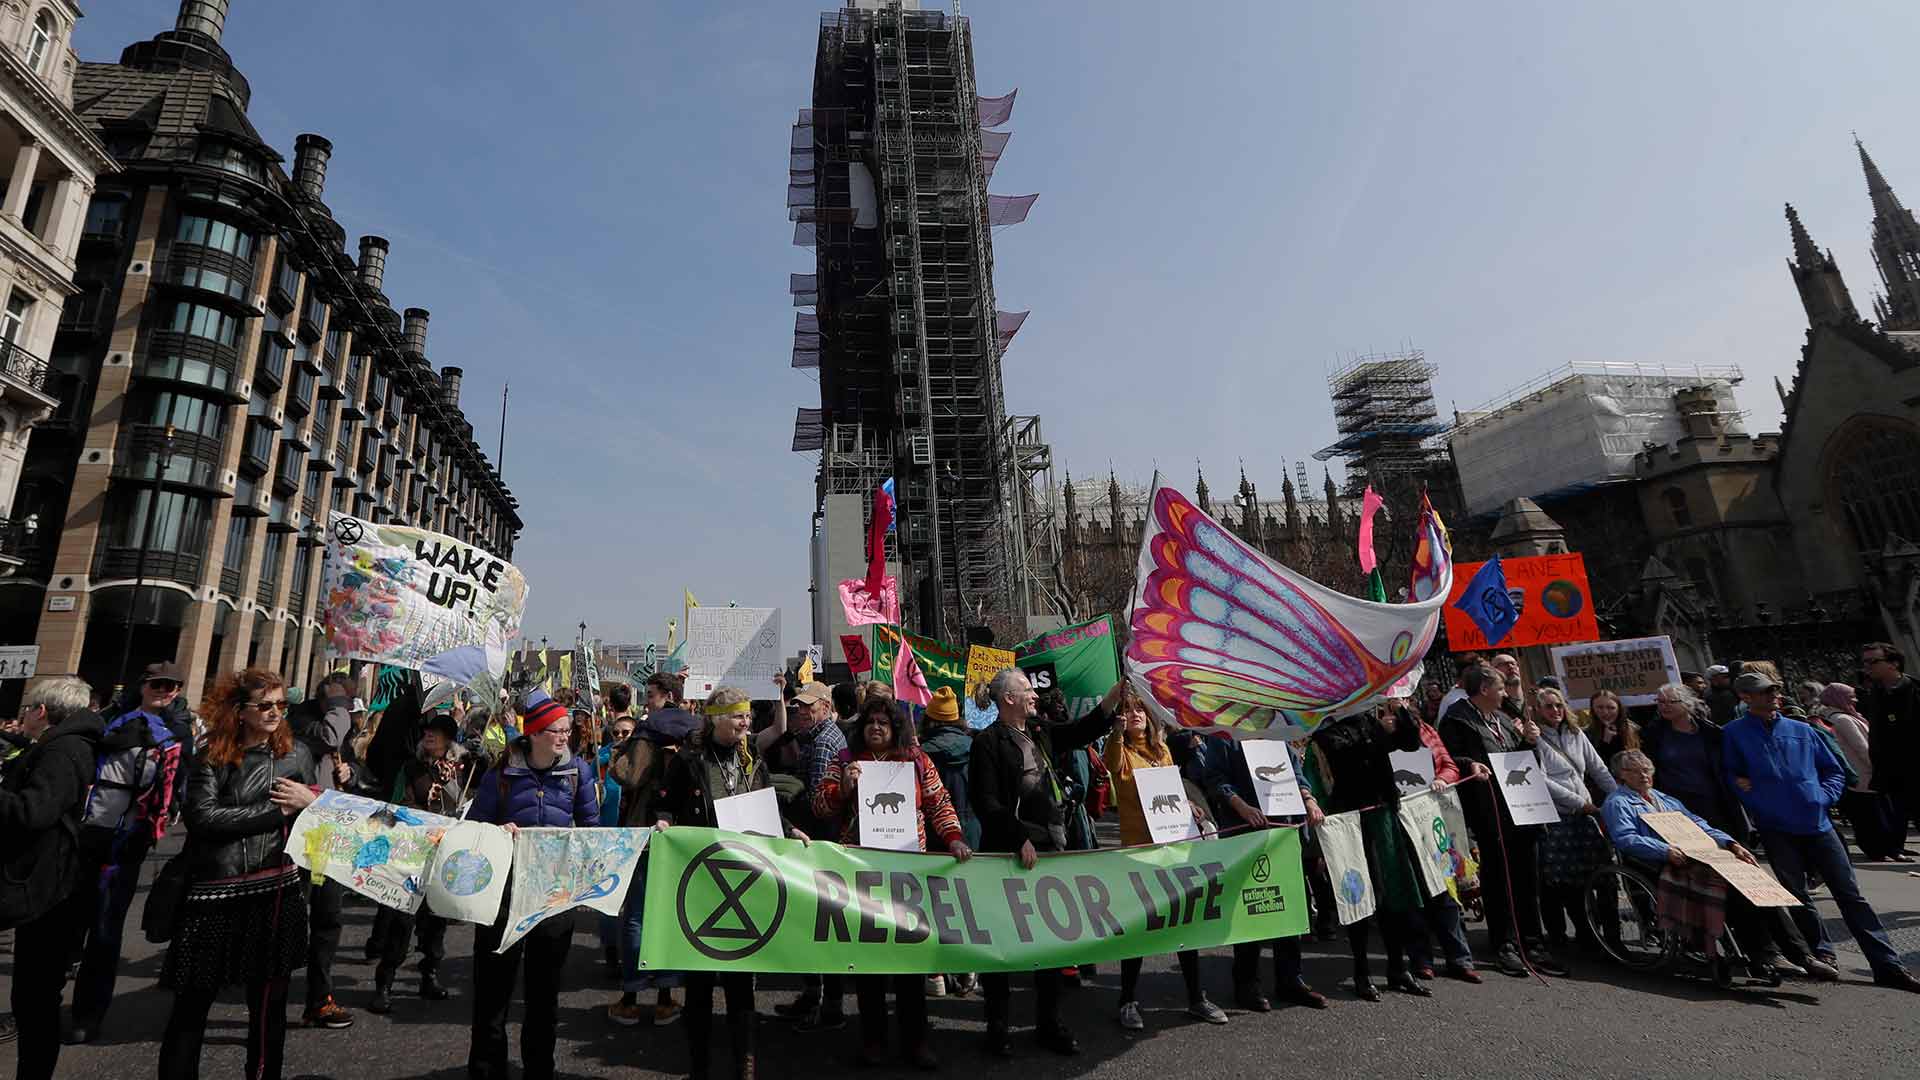 Más de 100 detenidos por los bloqueos durante la protesta ecologista en Londres